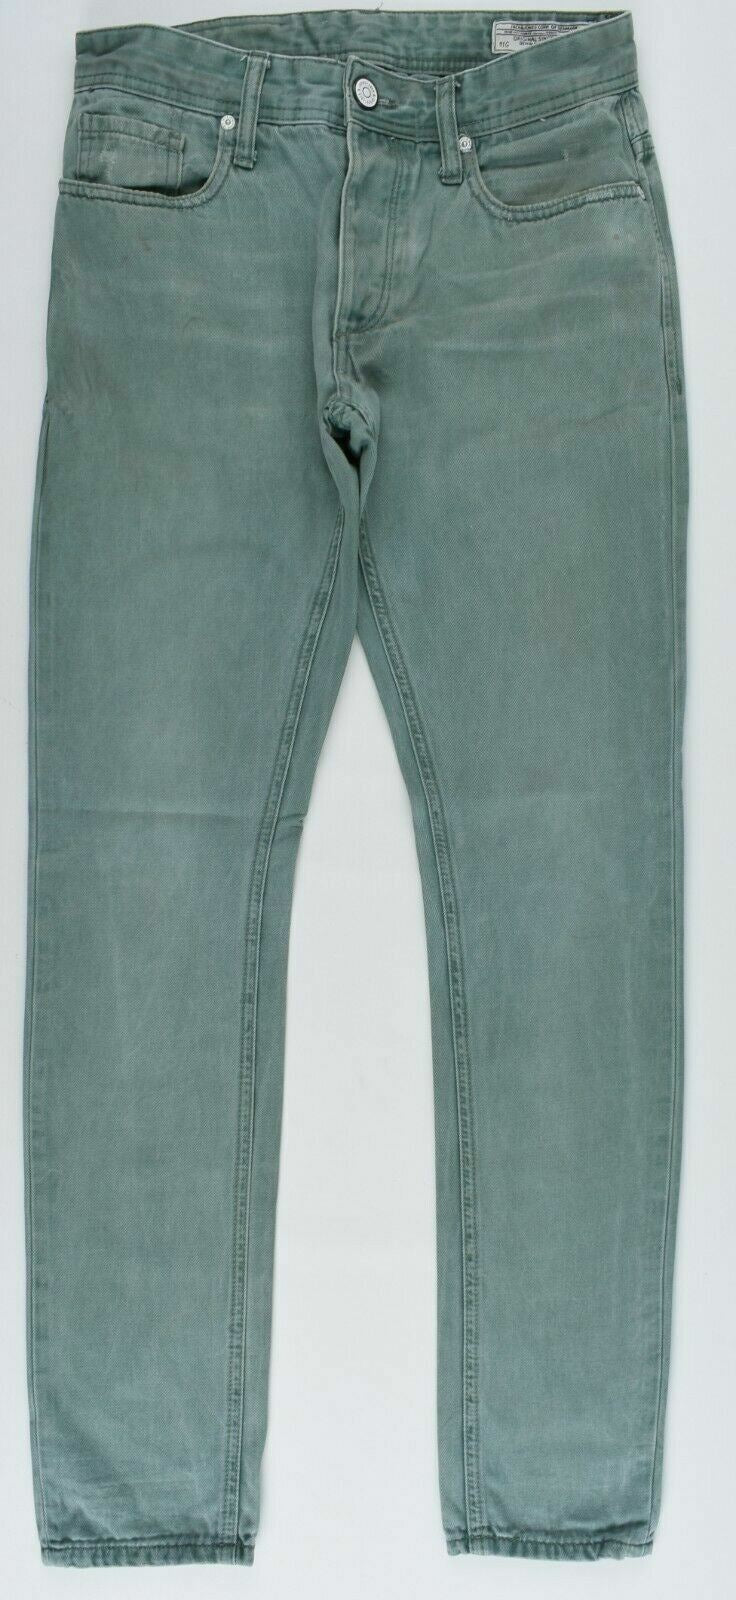 JACK & JONES Men's Green Skinny Jeans, size W28